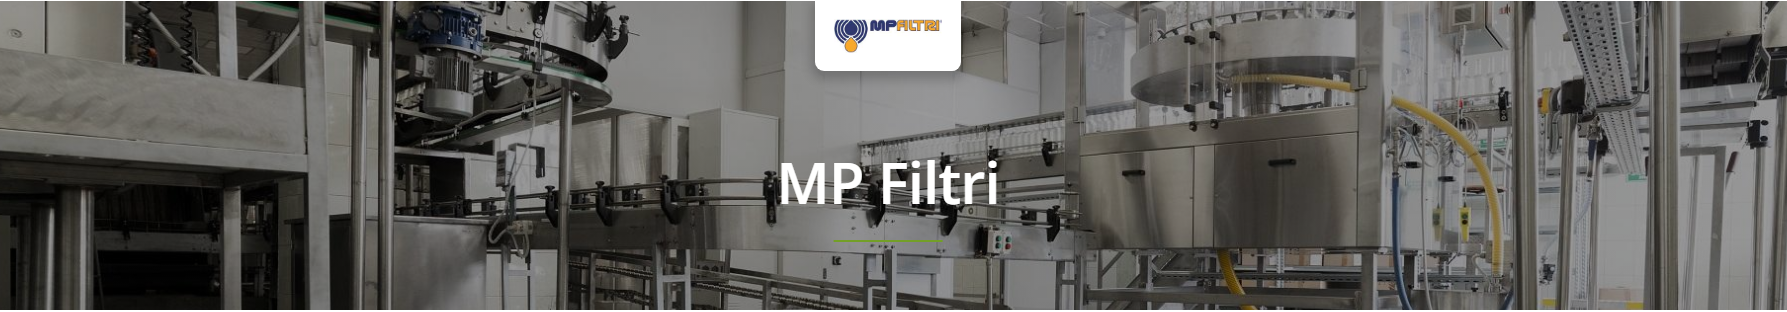 MP Filtri LMP Low & Medium Pressure Filters